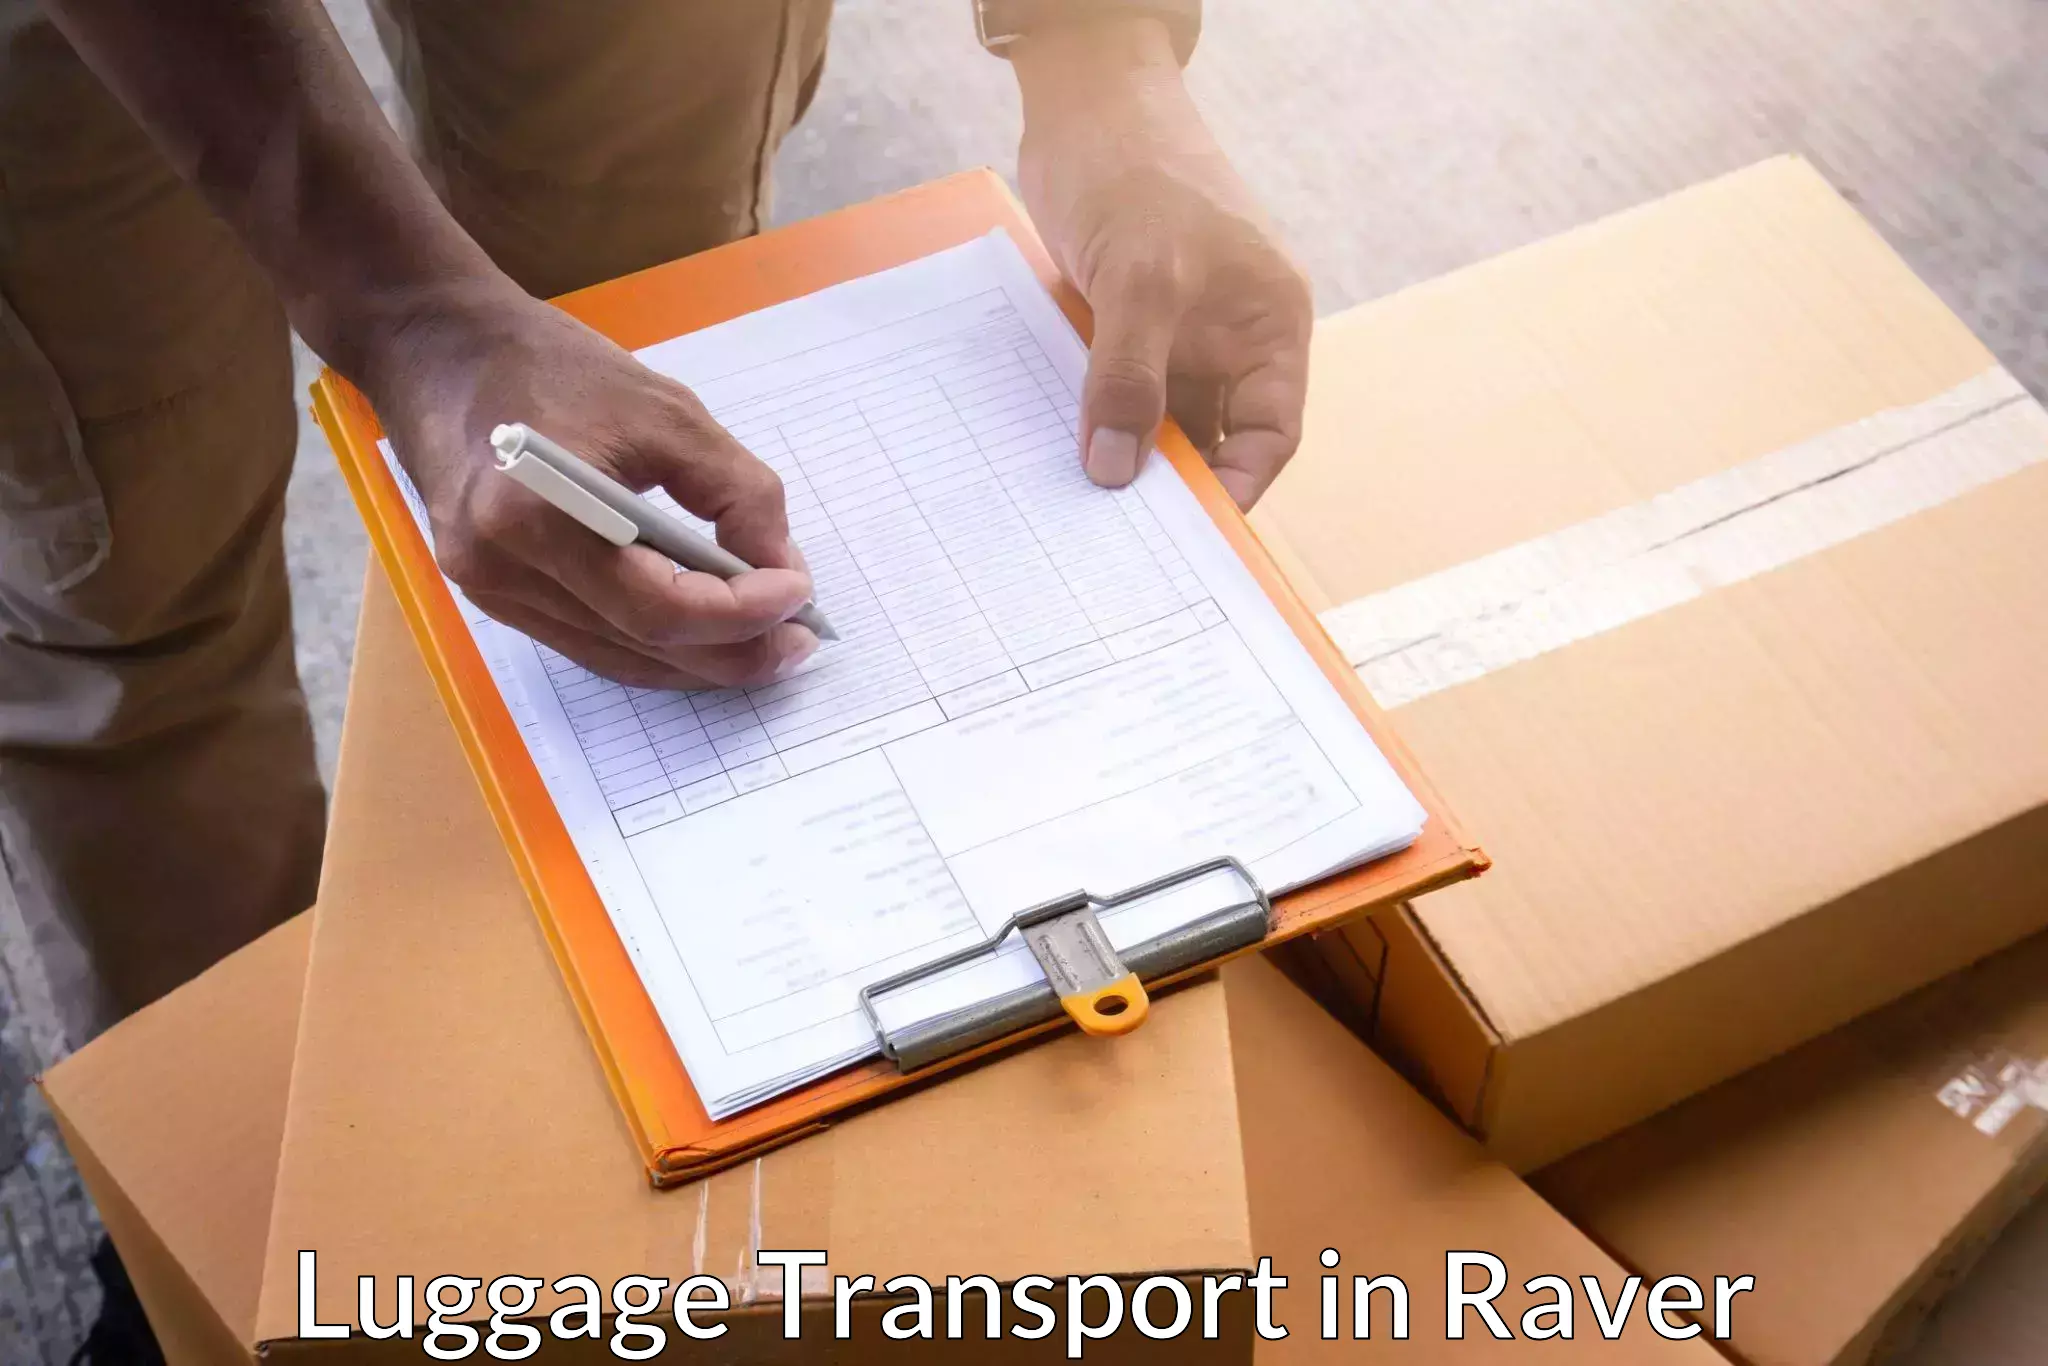 Doorstep luggage pickup in Raver